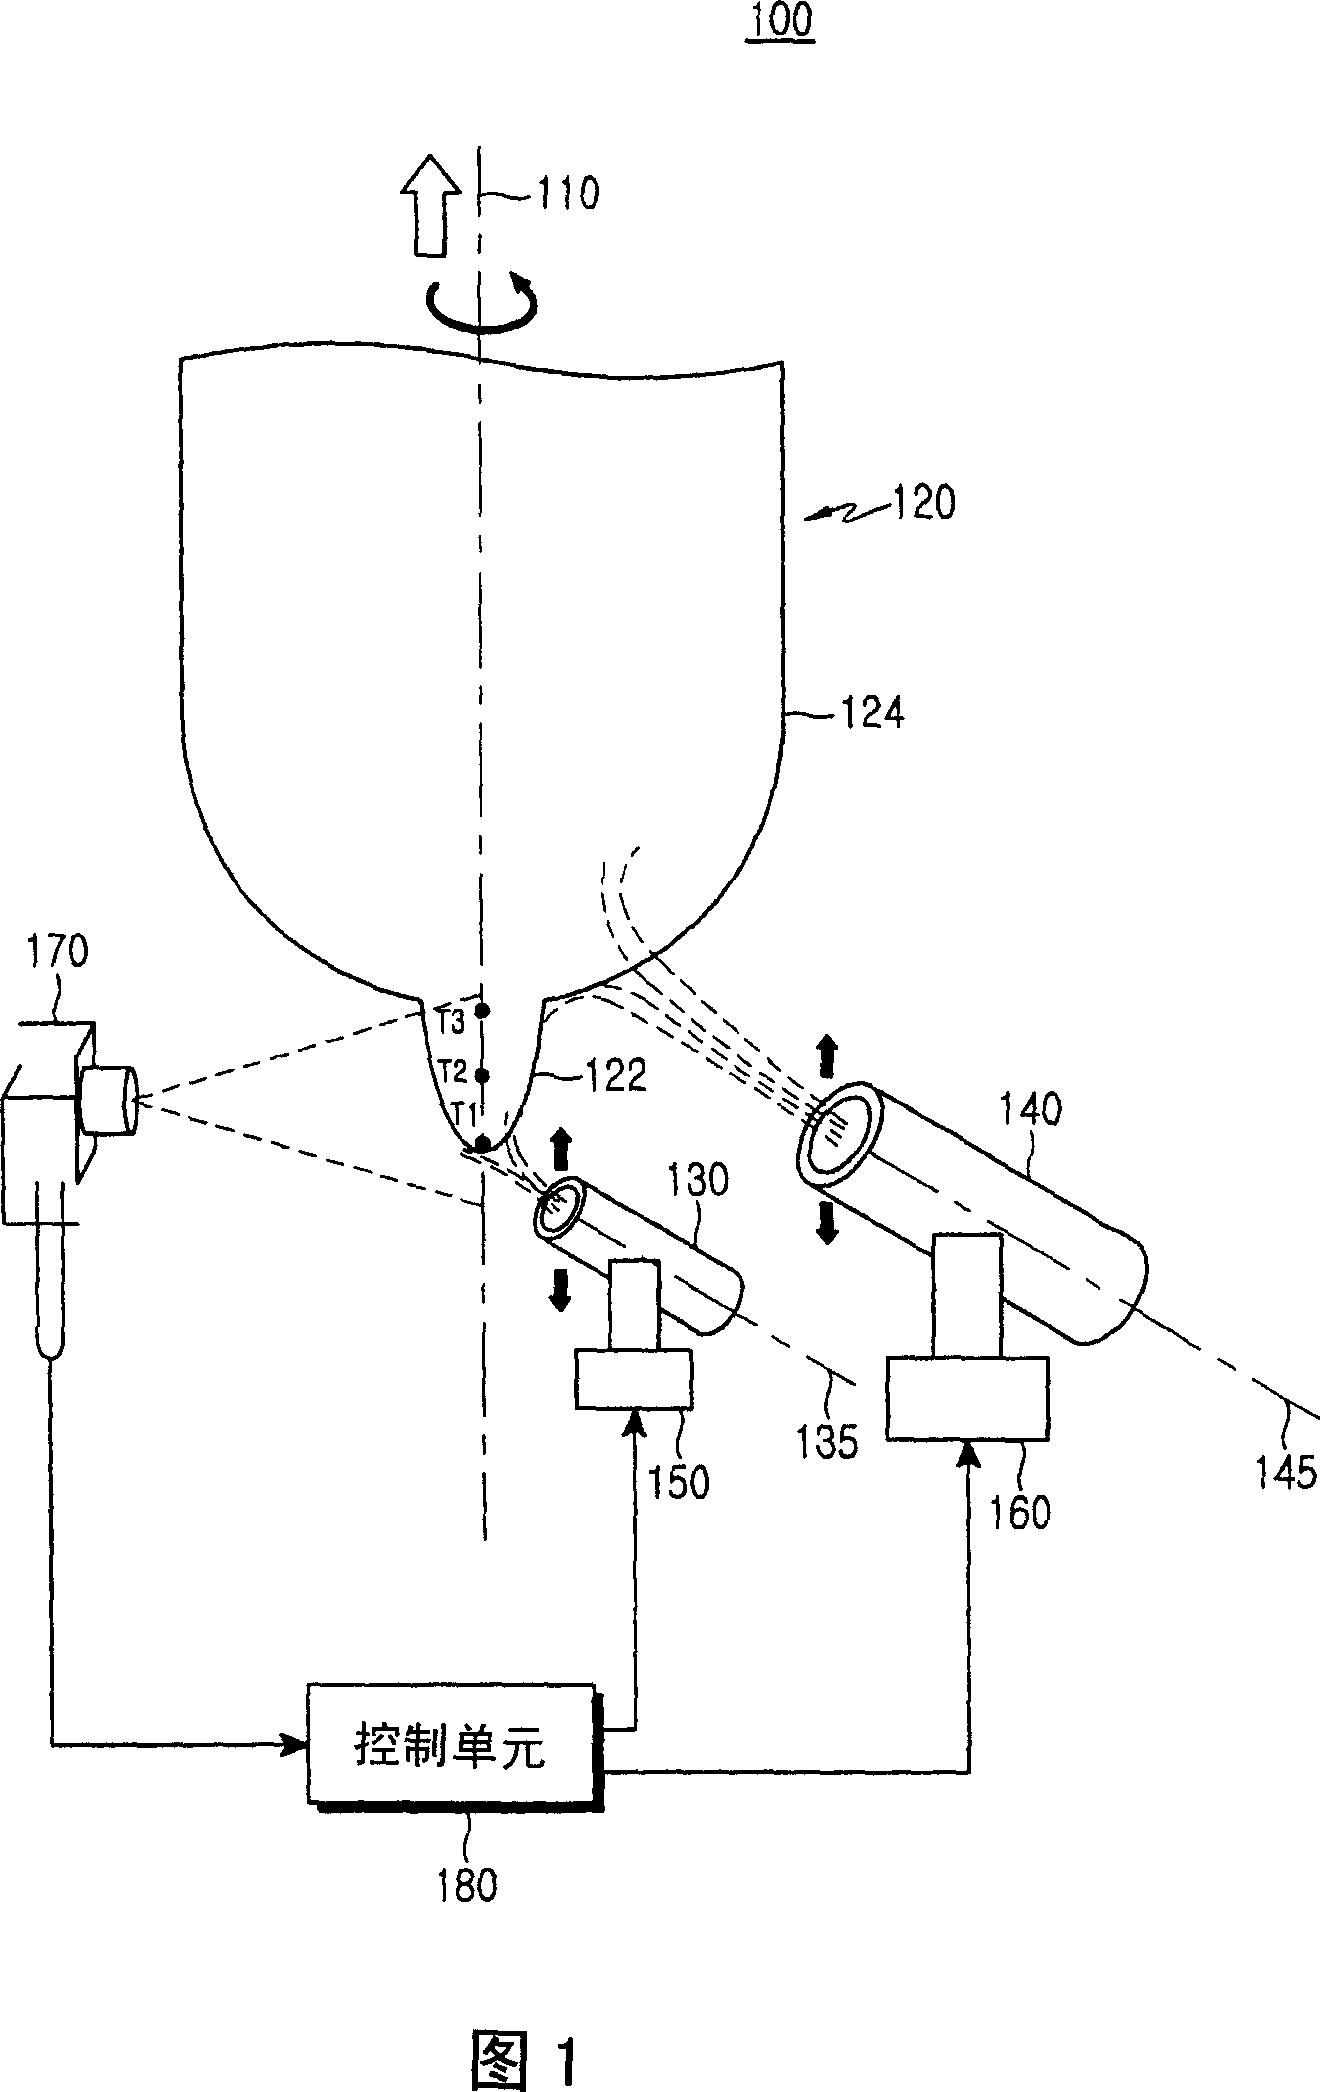 Vapor axial deposition apparatus and vapor axial deposition method